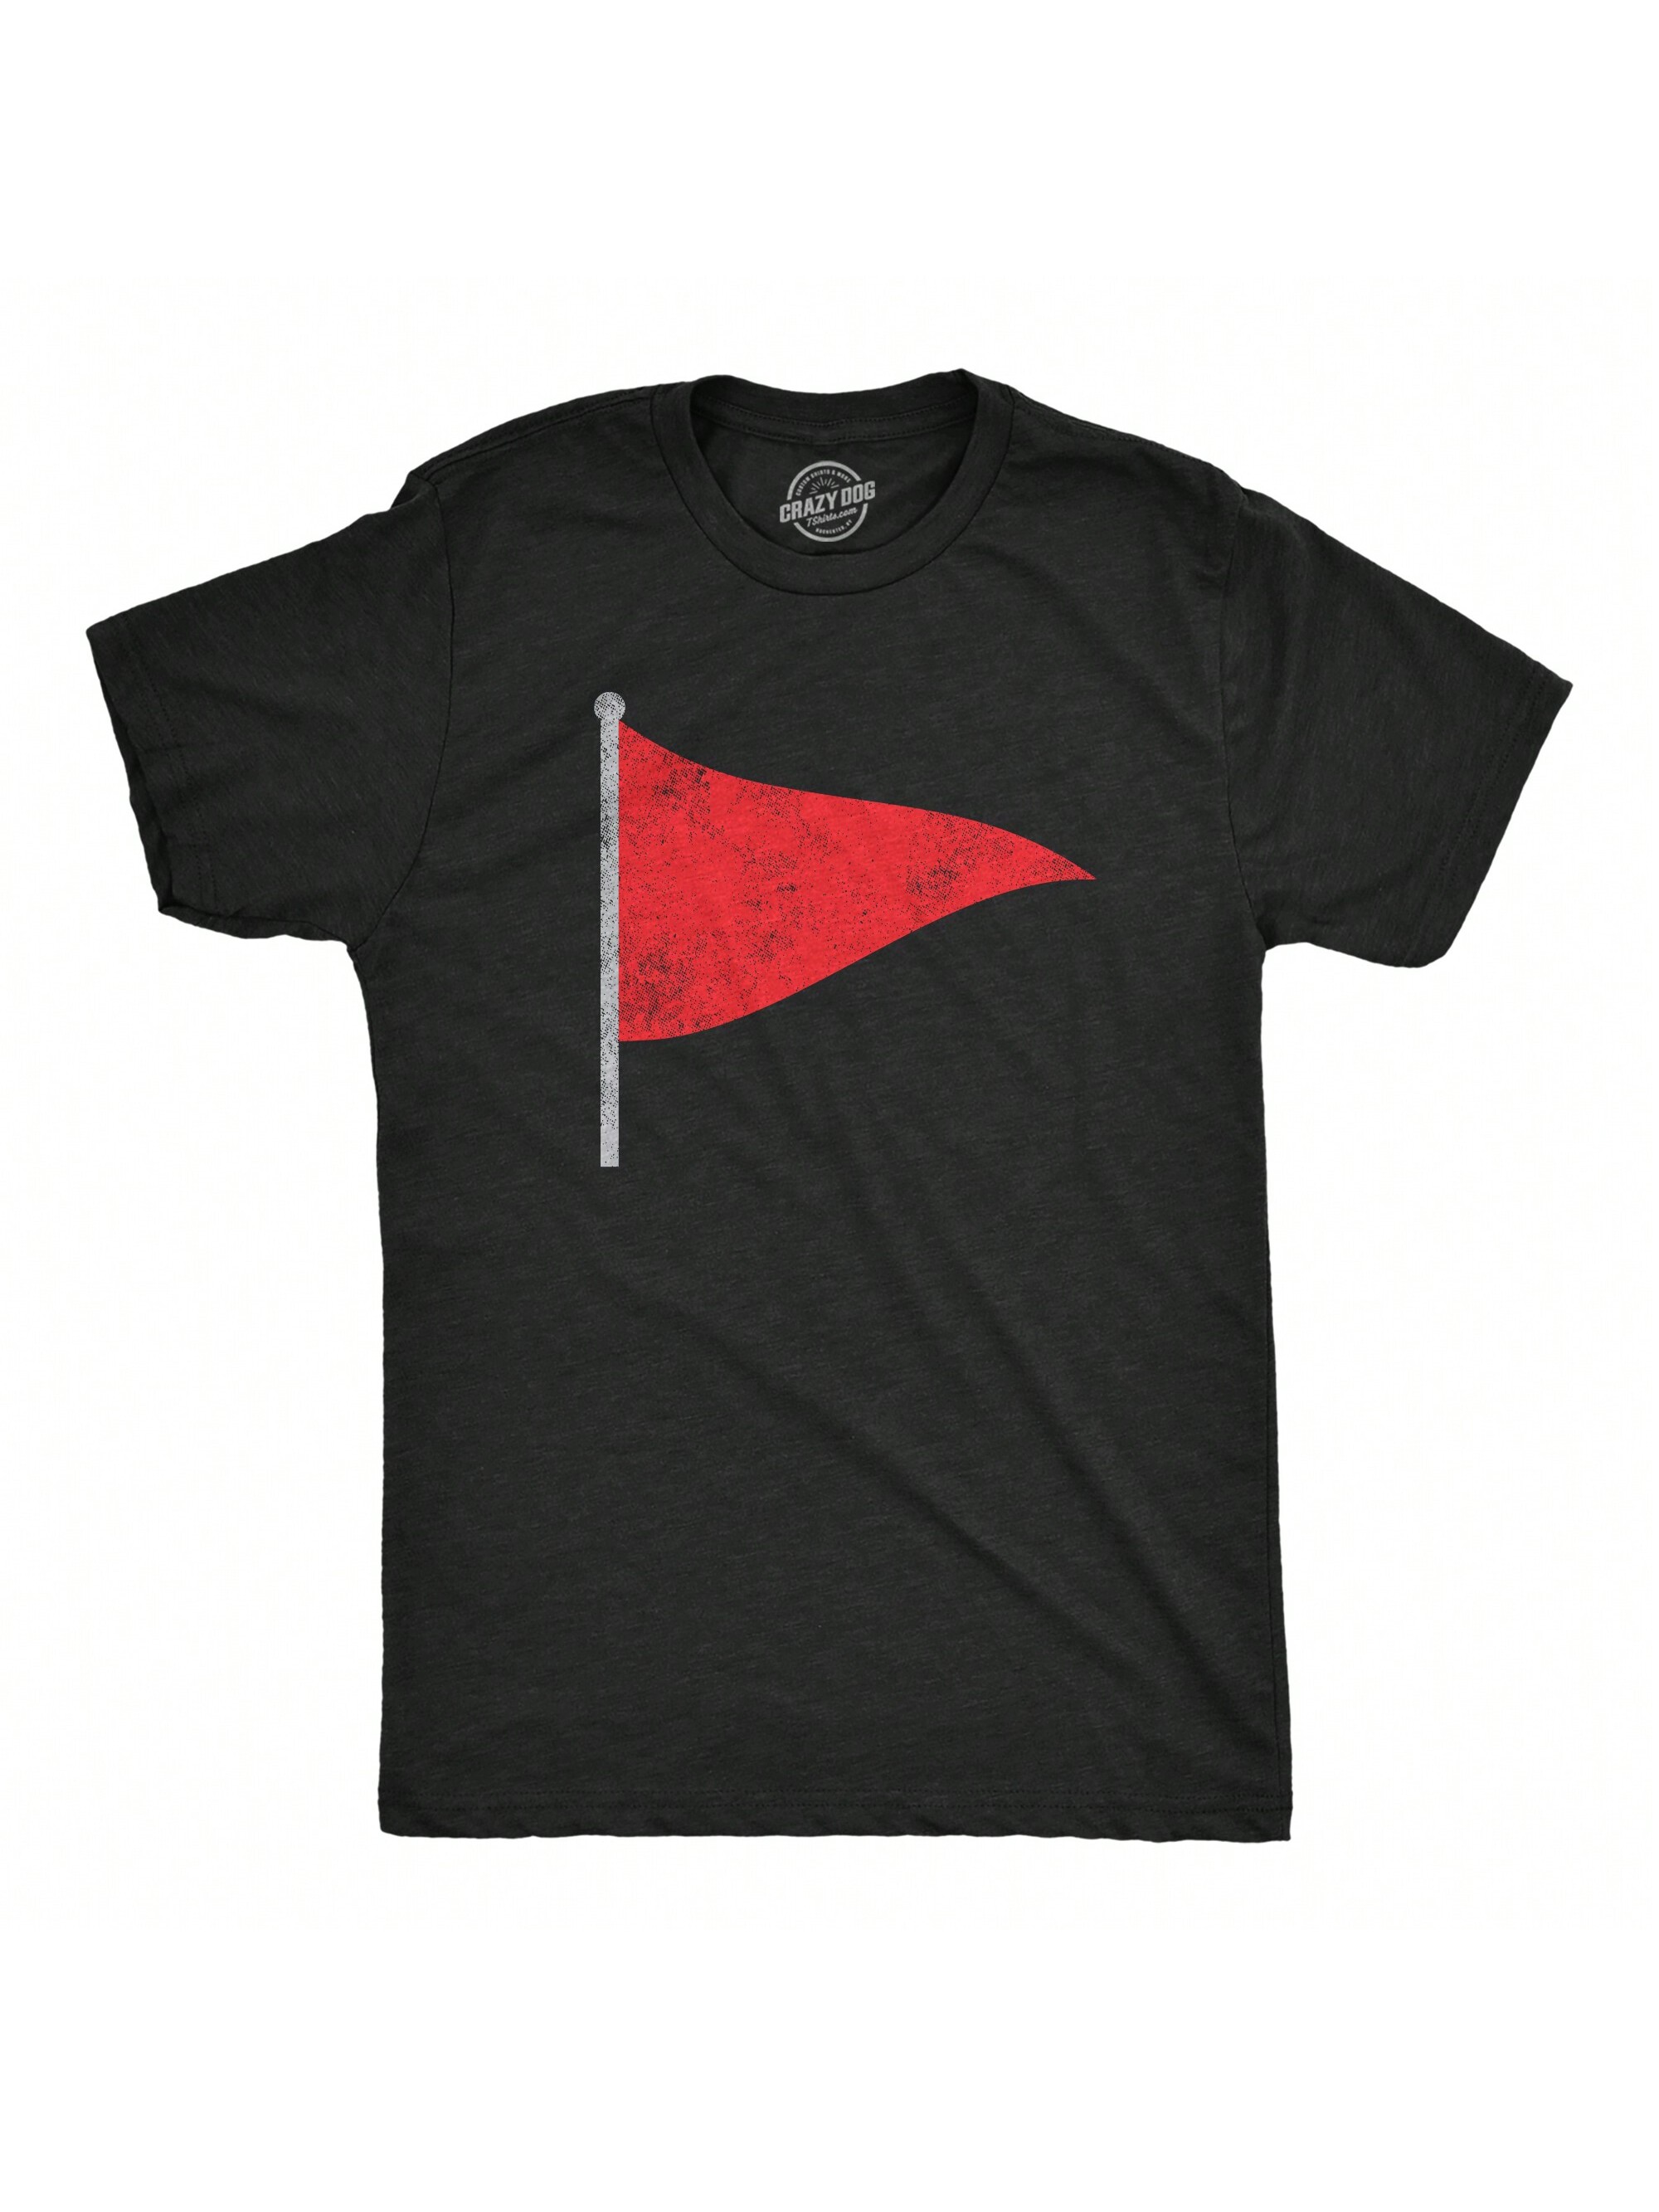 Мужская футболка Mi Tacos Es Mi Tacos, хизер блэк - красный флаг футболка с принтом злого поршня новая забавная футболка мужская забавная футболка мужская одежда с коротким рукавом бренд одежды